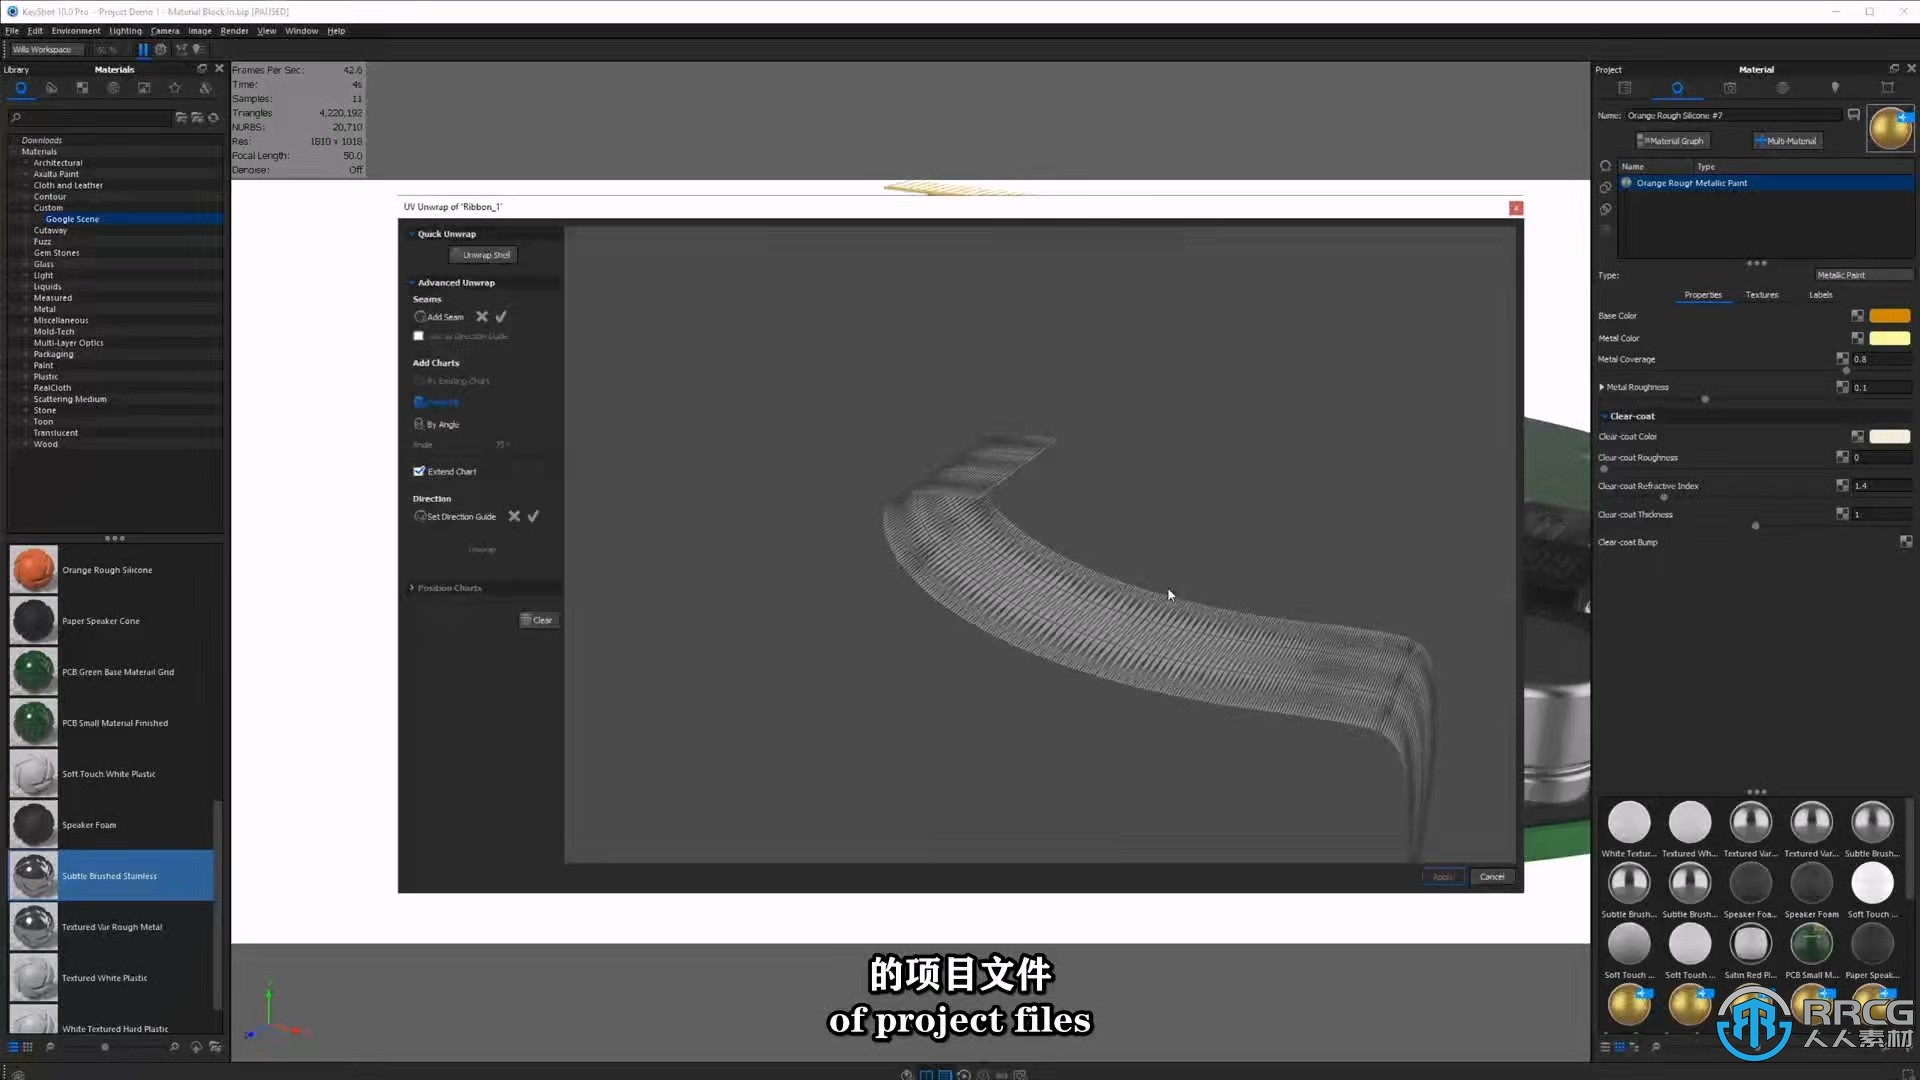 【中文字幕】KeyShot渲染核心技术大师班视频教程